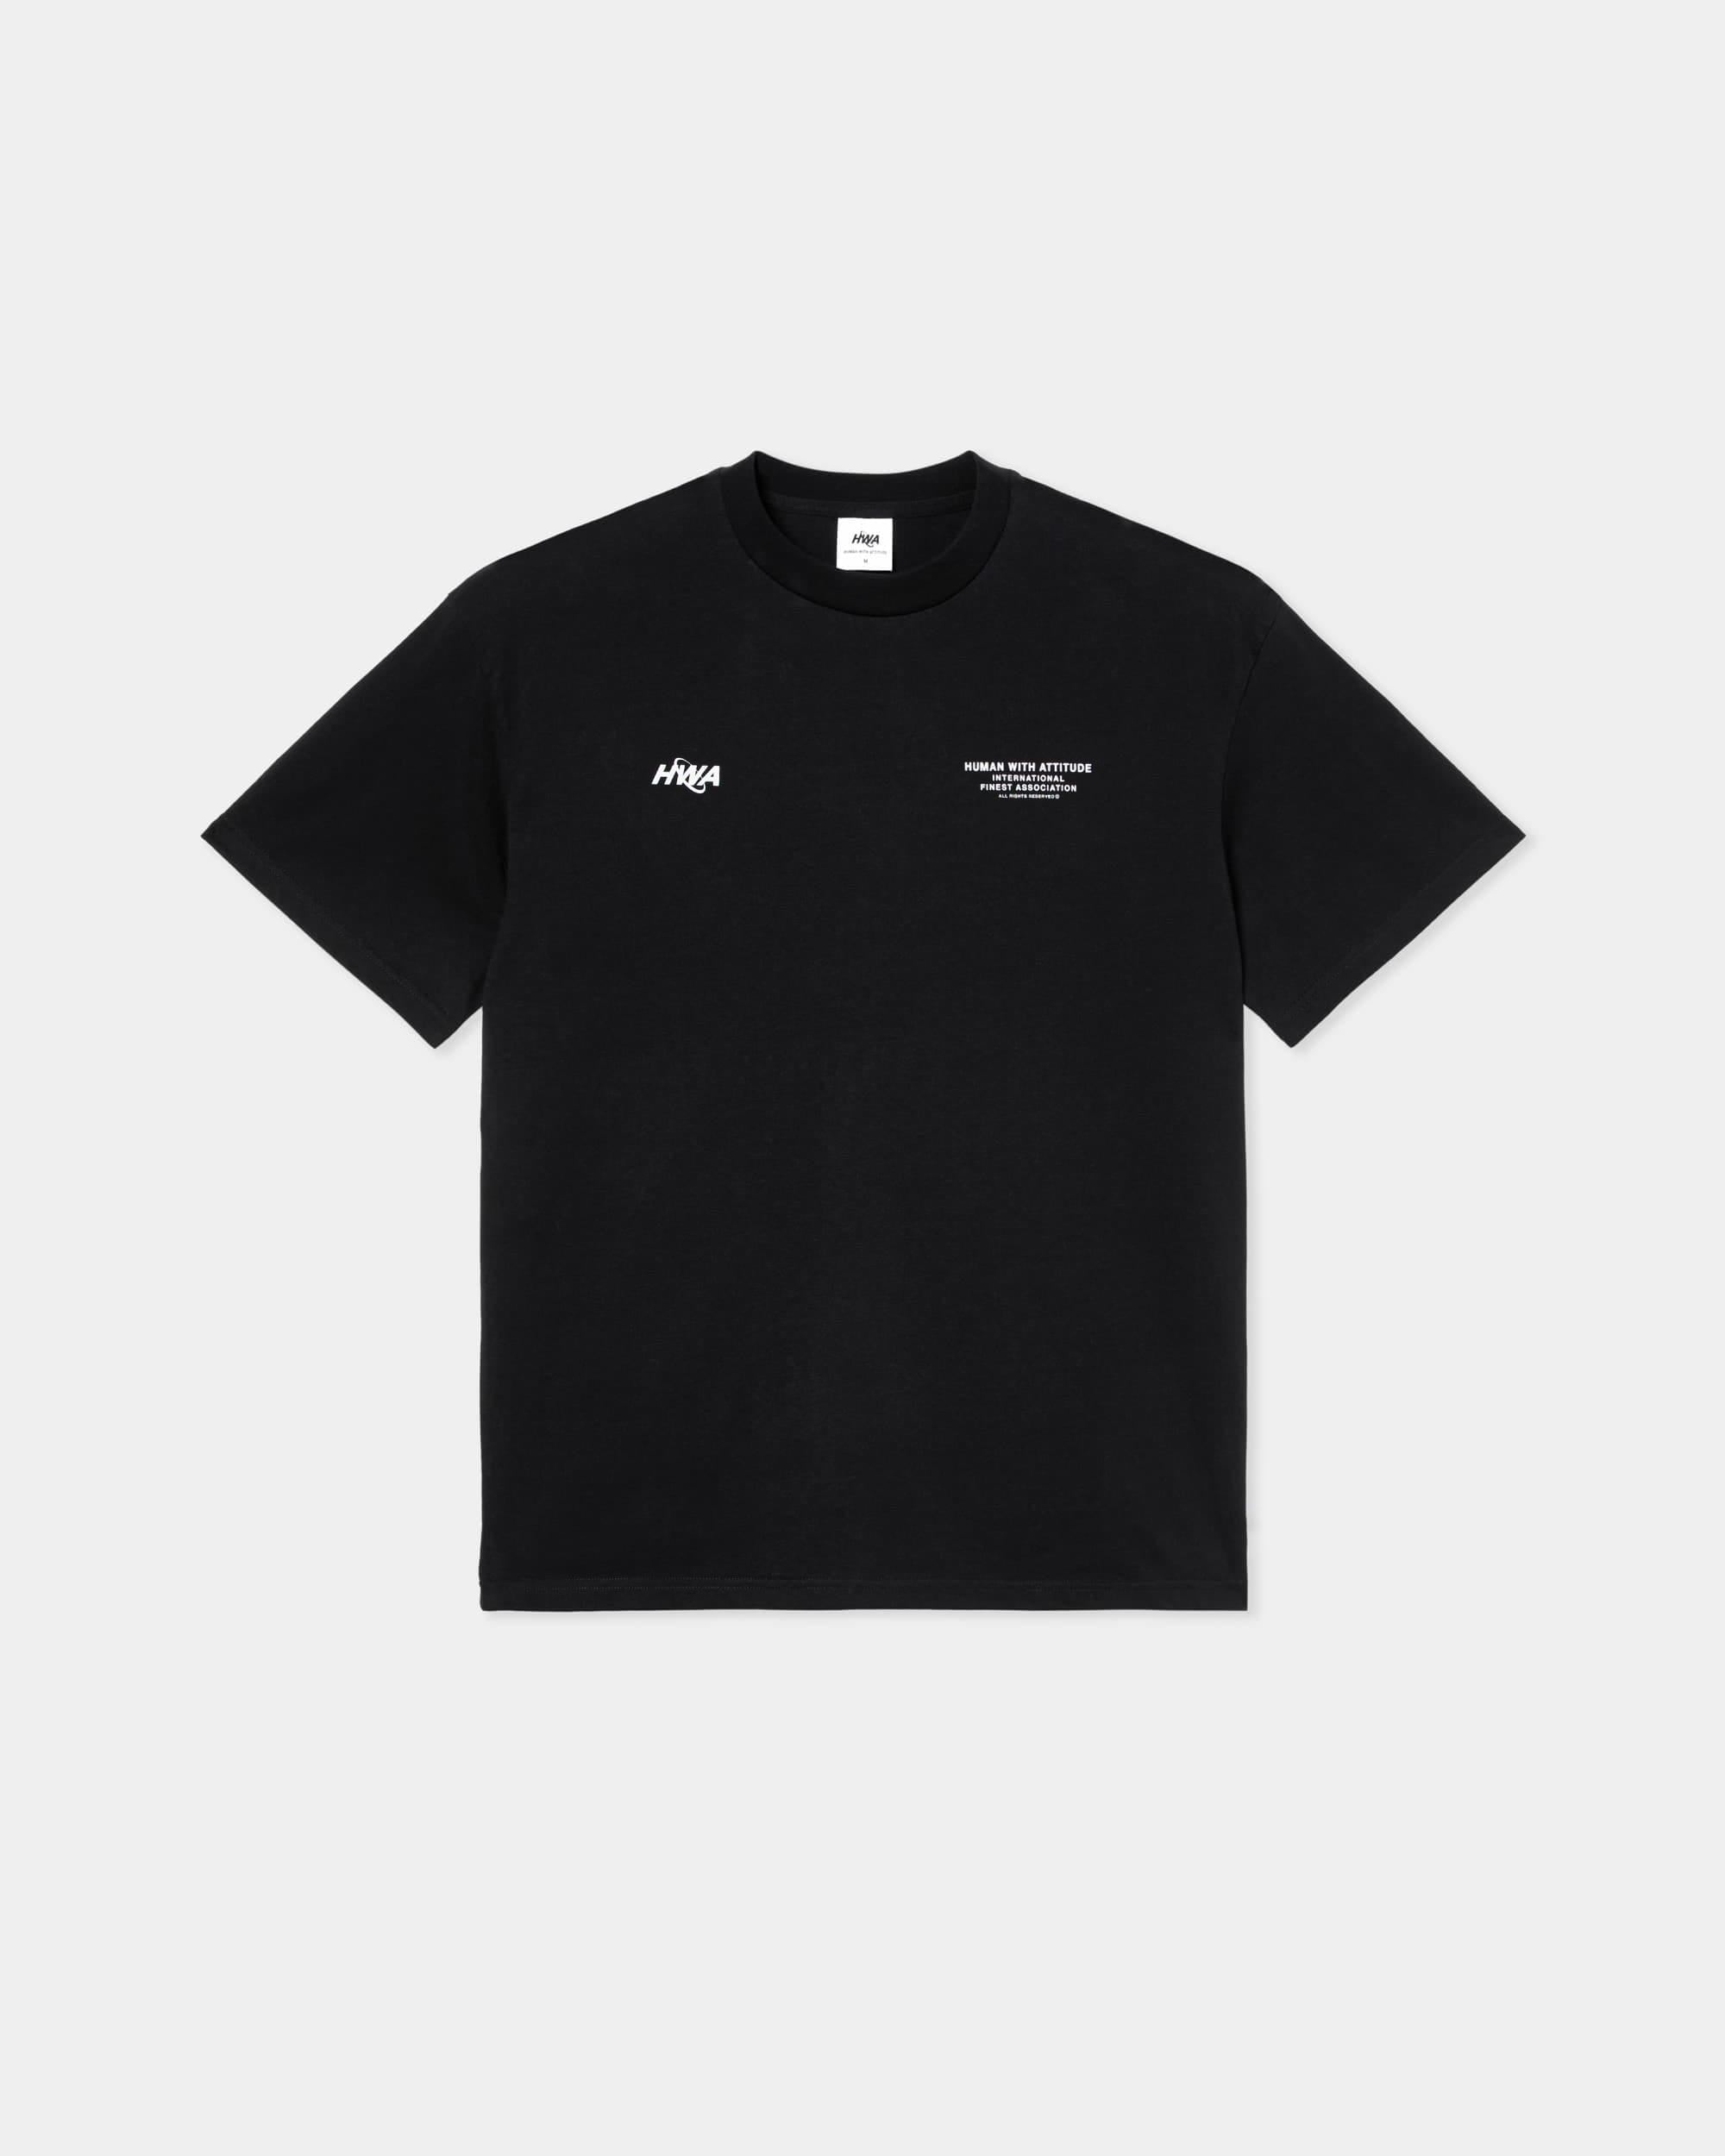 Internationales T-Shirt – Schwarz